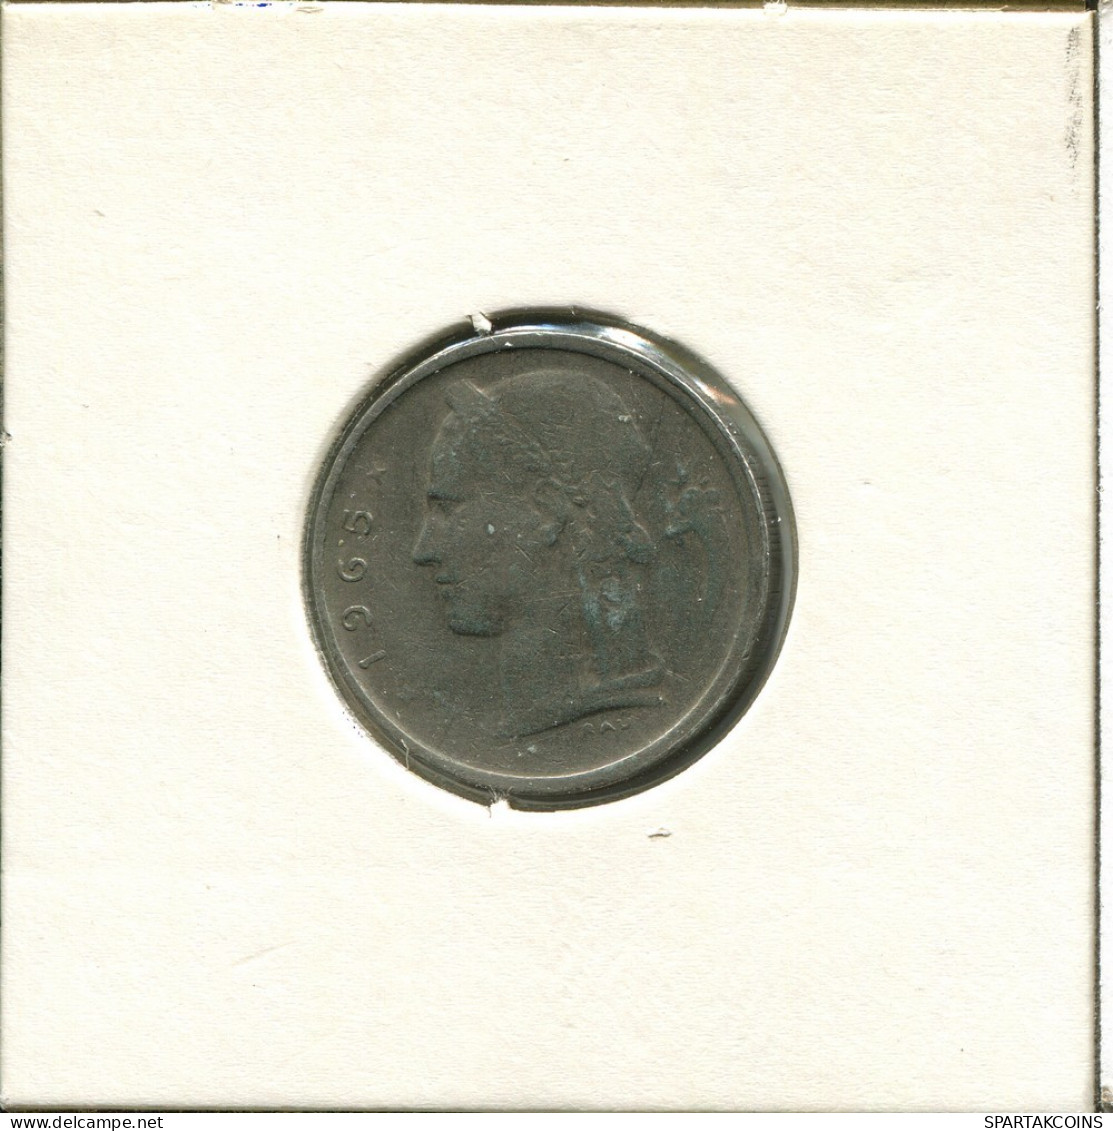 1 FRANC 1965 Französisch Text BELGIEN BELGIUM Münze #AU027.D.A - 1 Franc